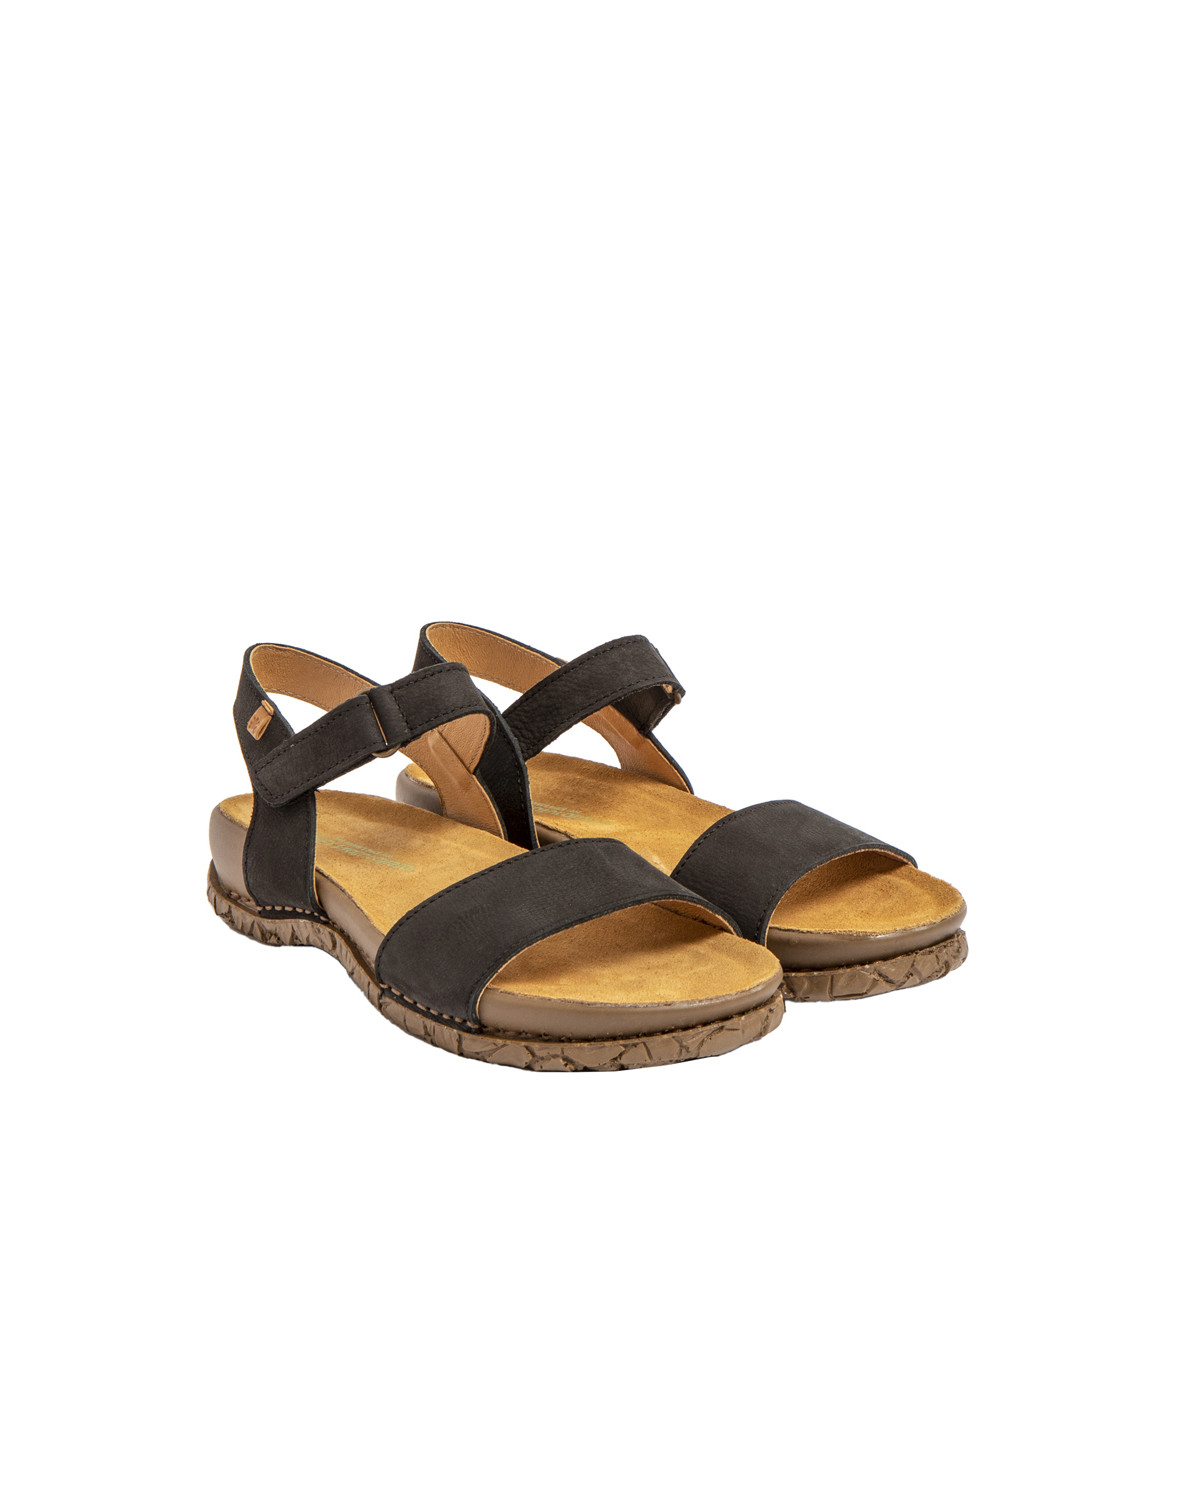 Sandales confortables plates en cuir à scratch et semelles ergonomique - Noir - El naturalista